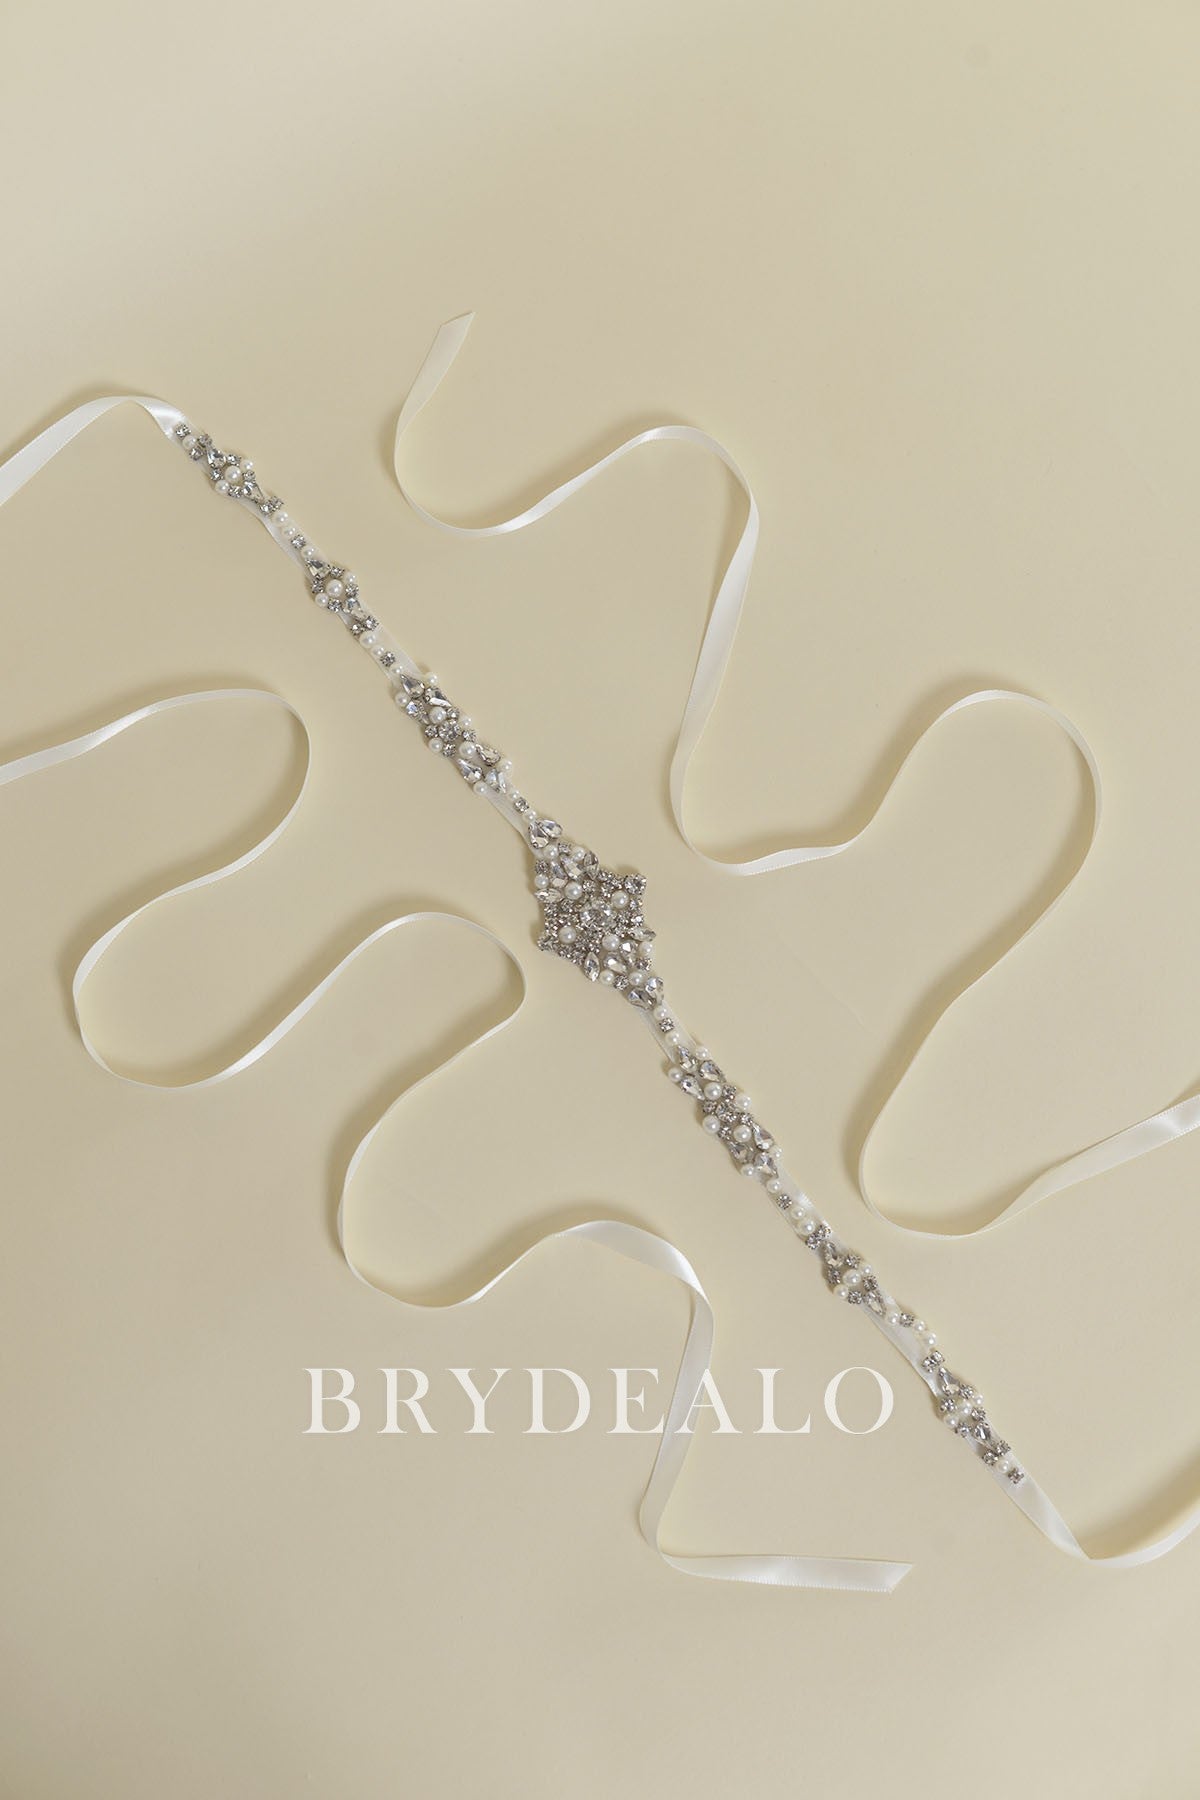 Wholesale Glamorous Crystals & Pearls Bridal Sash